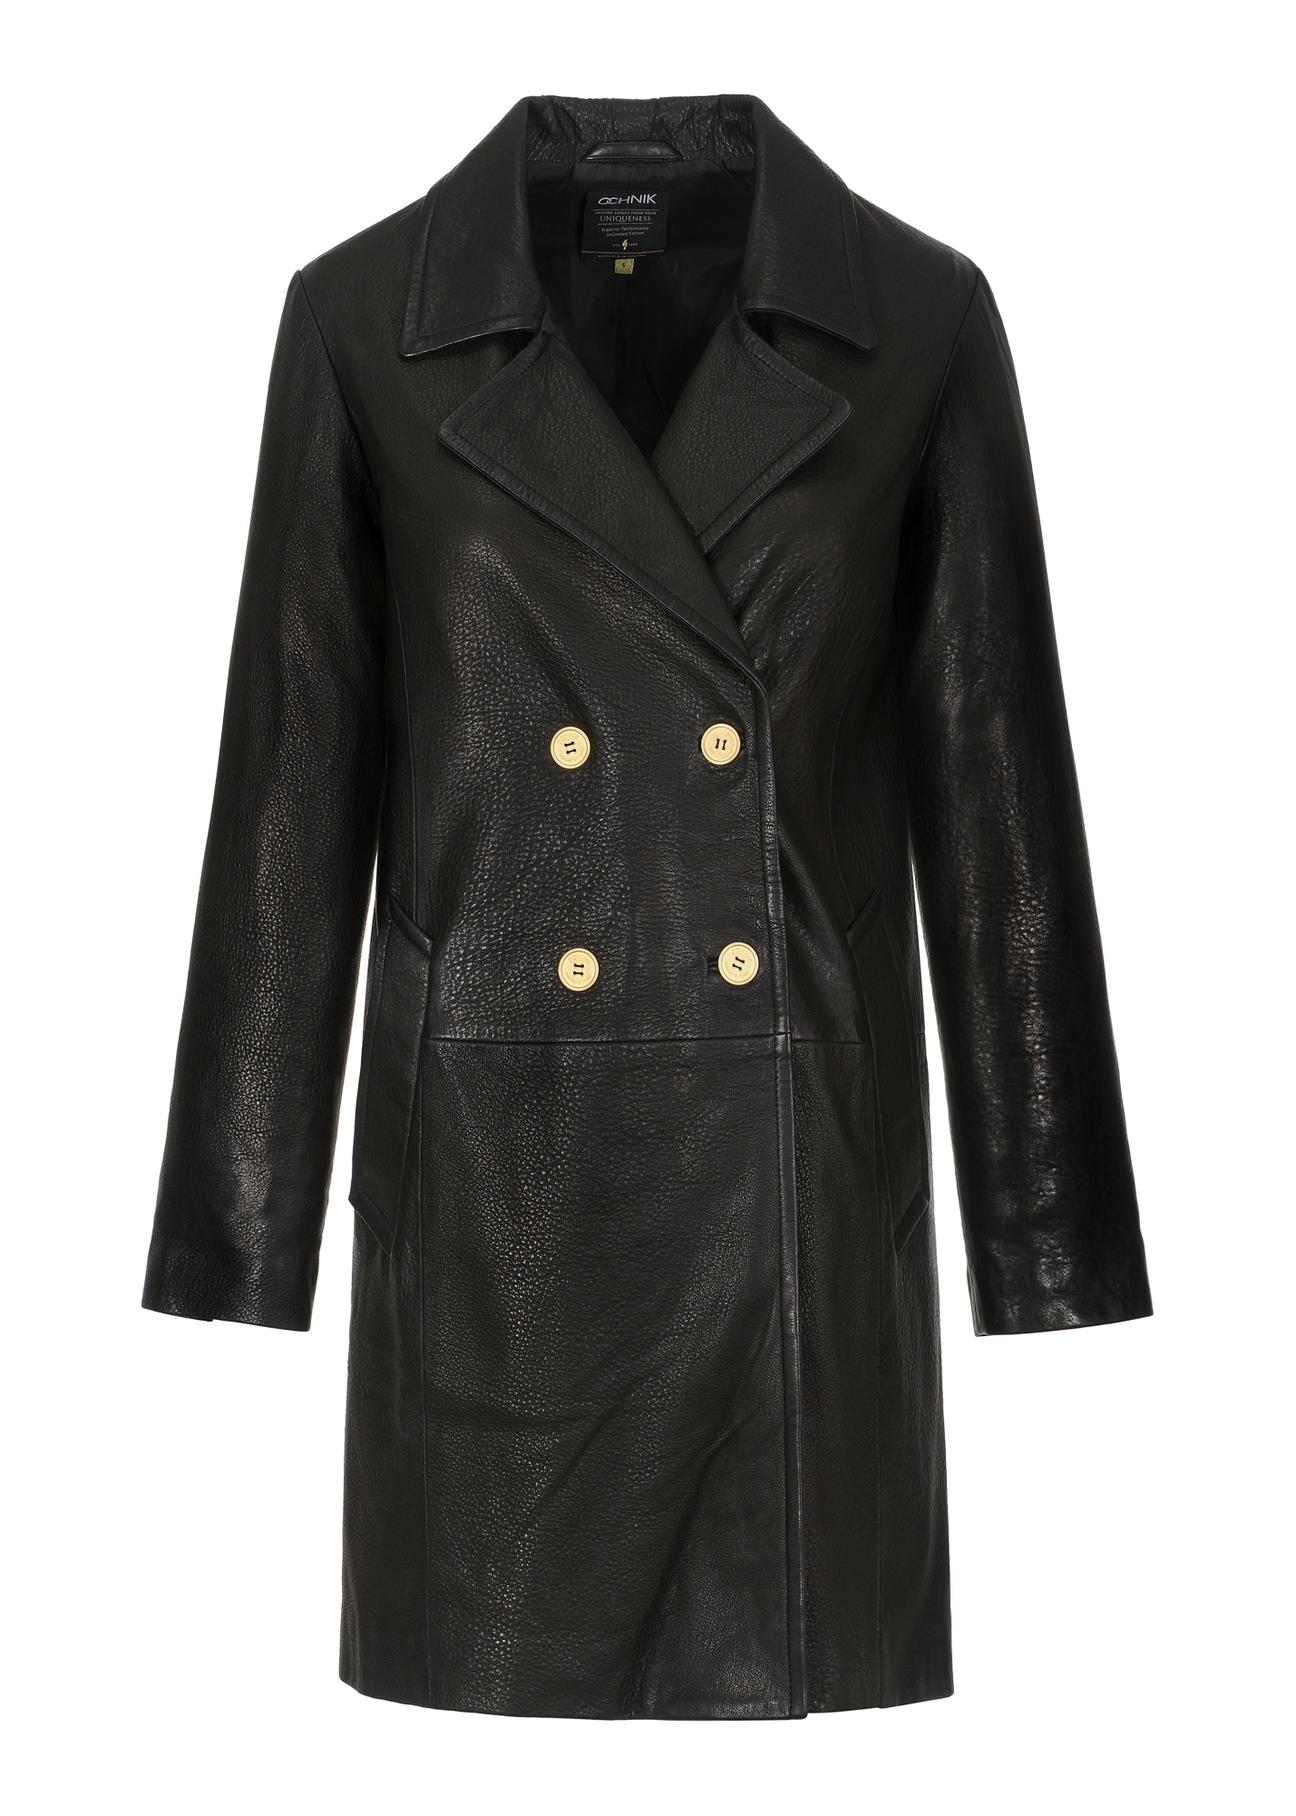 Skórzana kurtka damska w formie płaszcza KURDS-0443-1313(Z23)